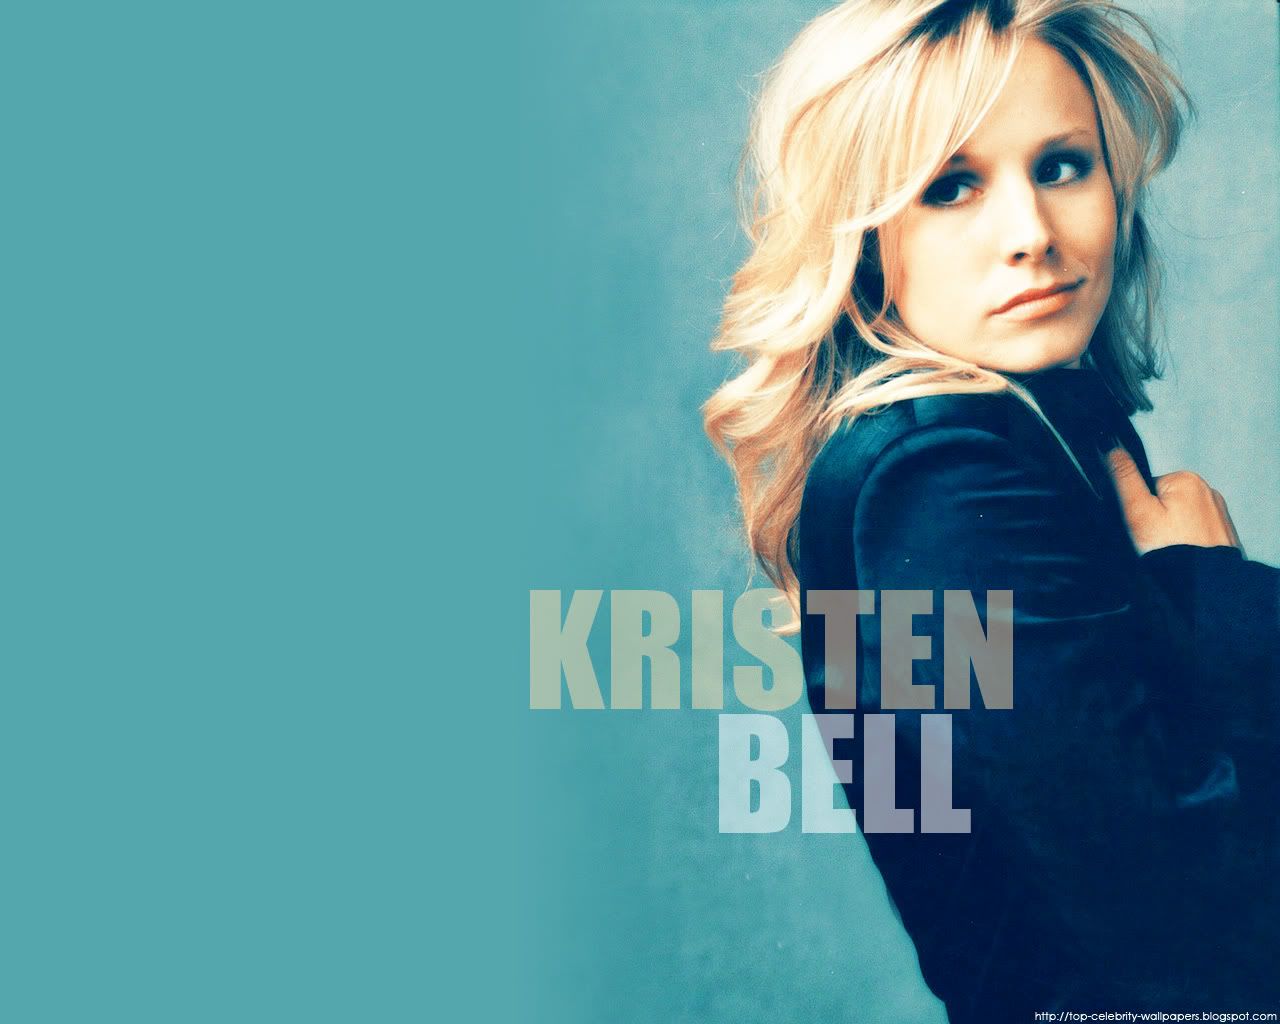 Kristen Bell Wallpaper, Veronica Mars, Heroes | TV Fanart, Wallpapers & Icons1280 x 1024